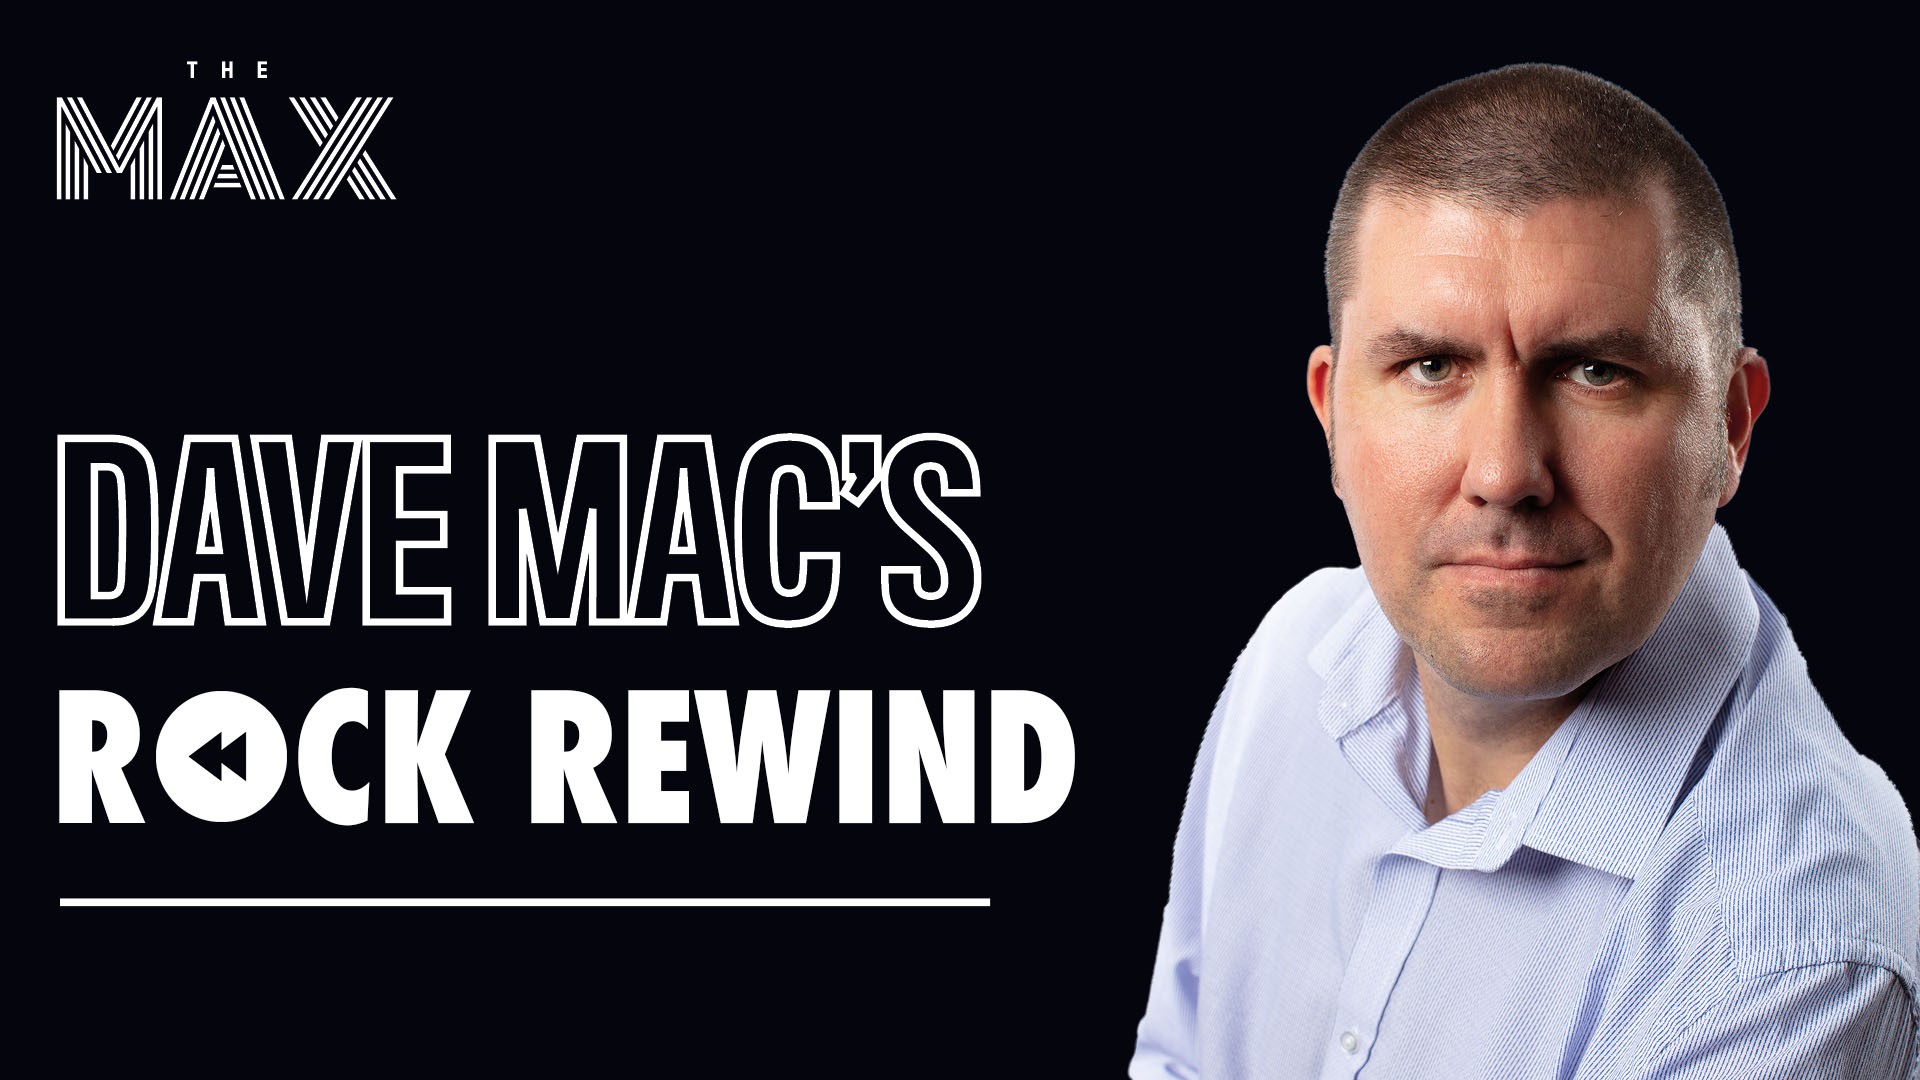 Dave Mac's ROCK REWIND